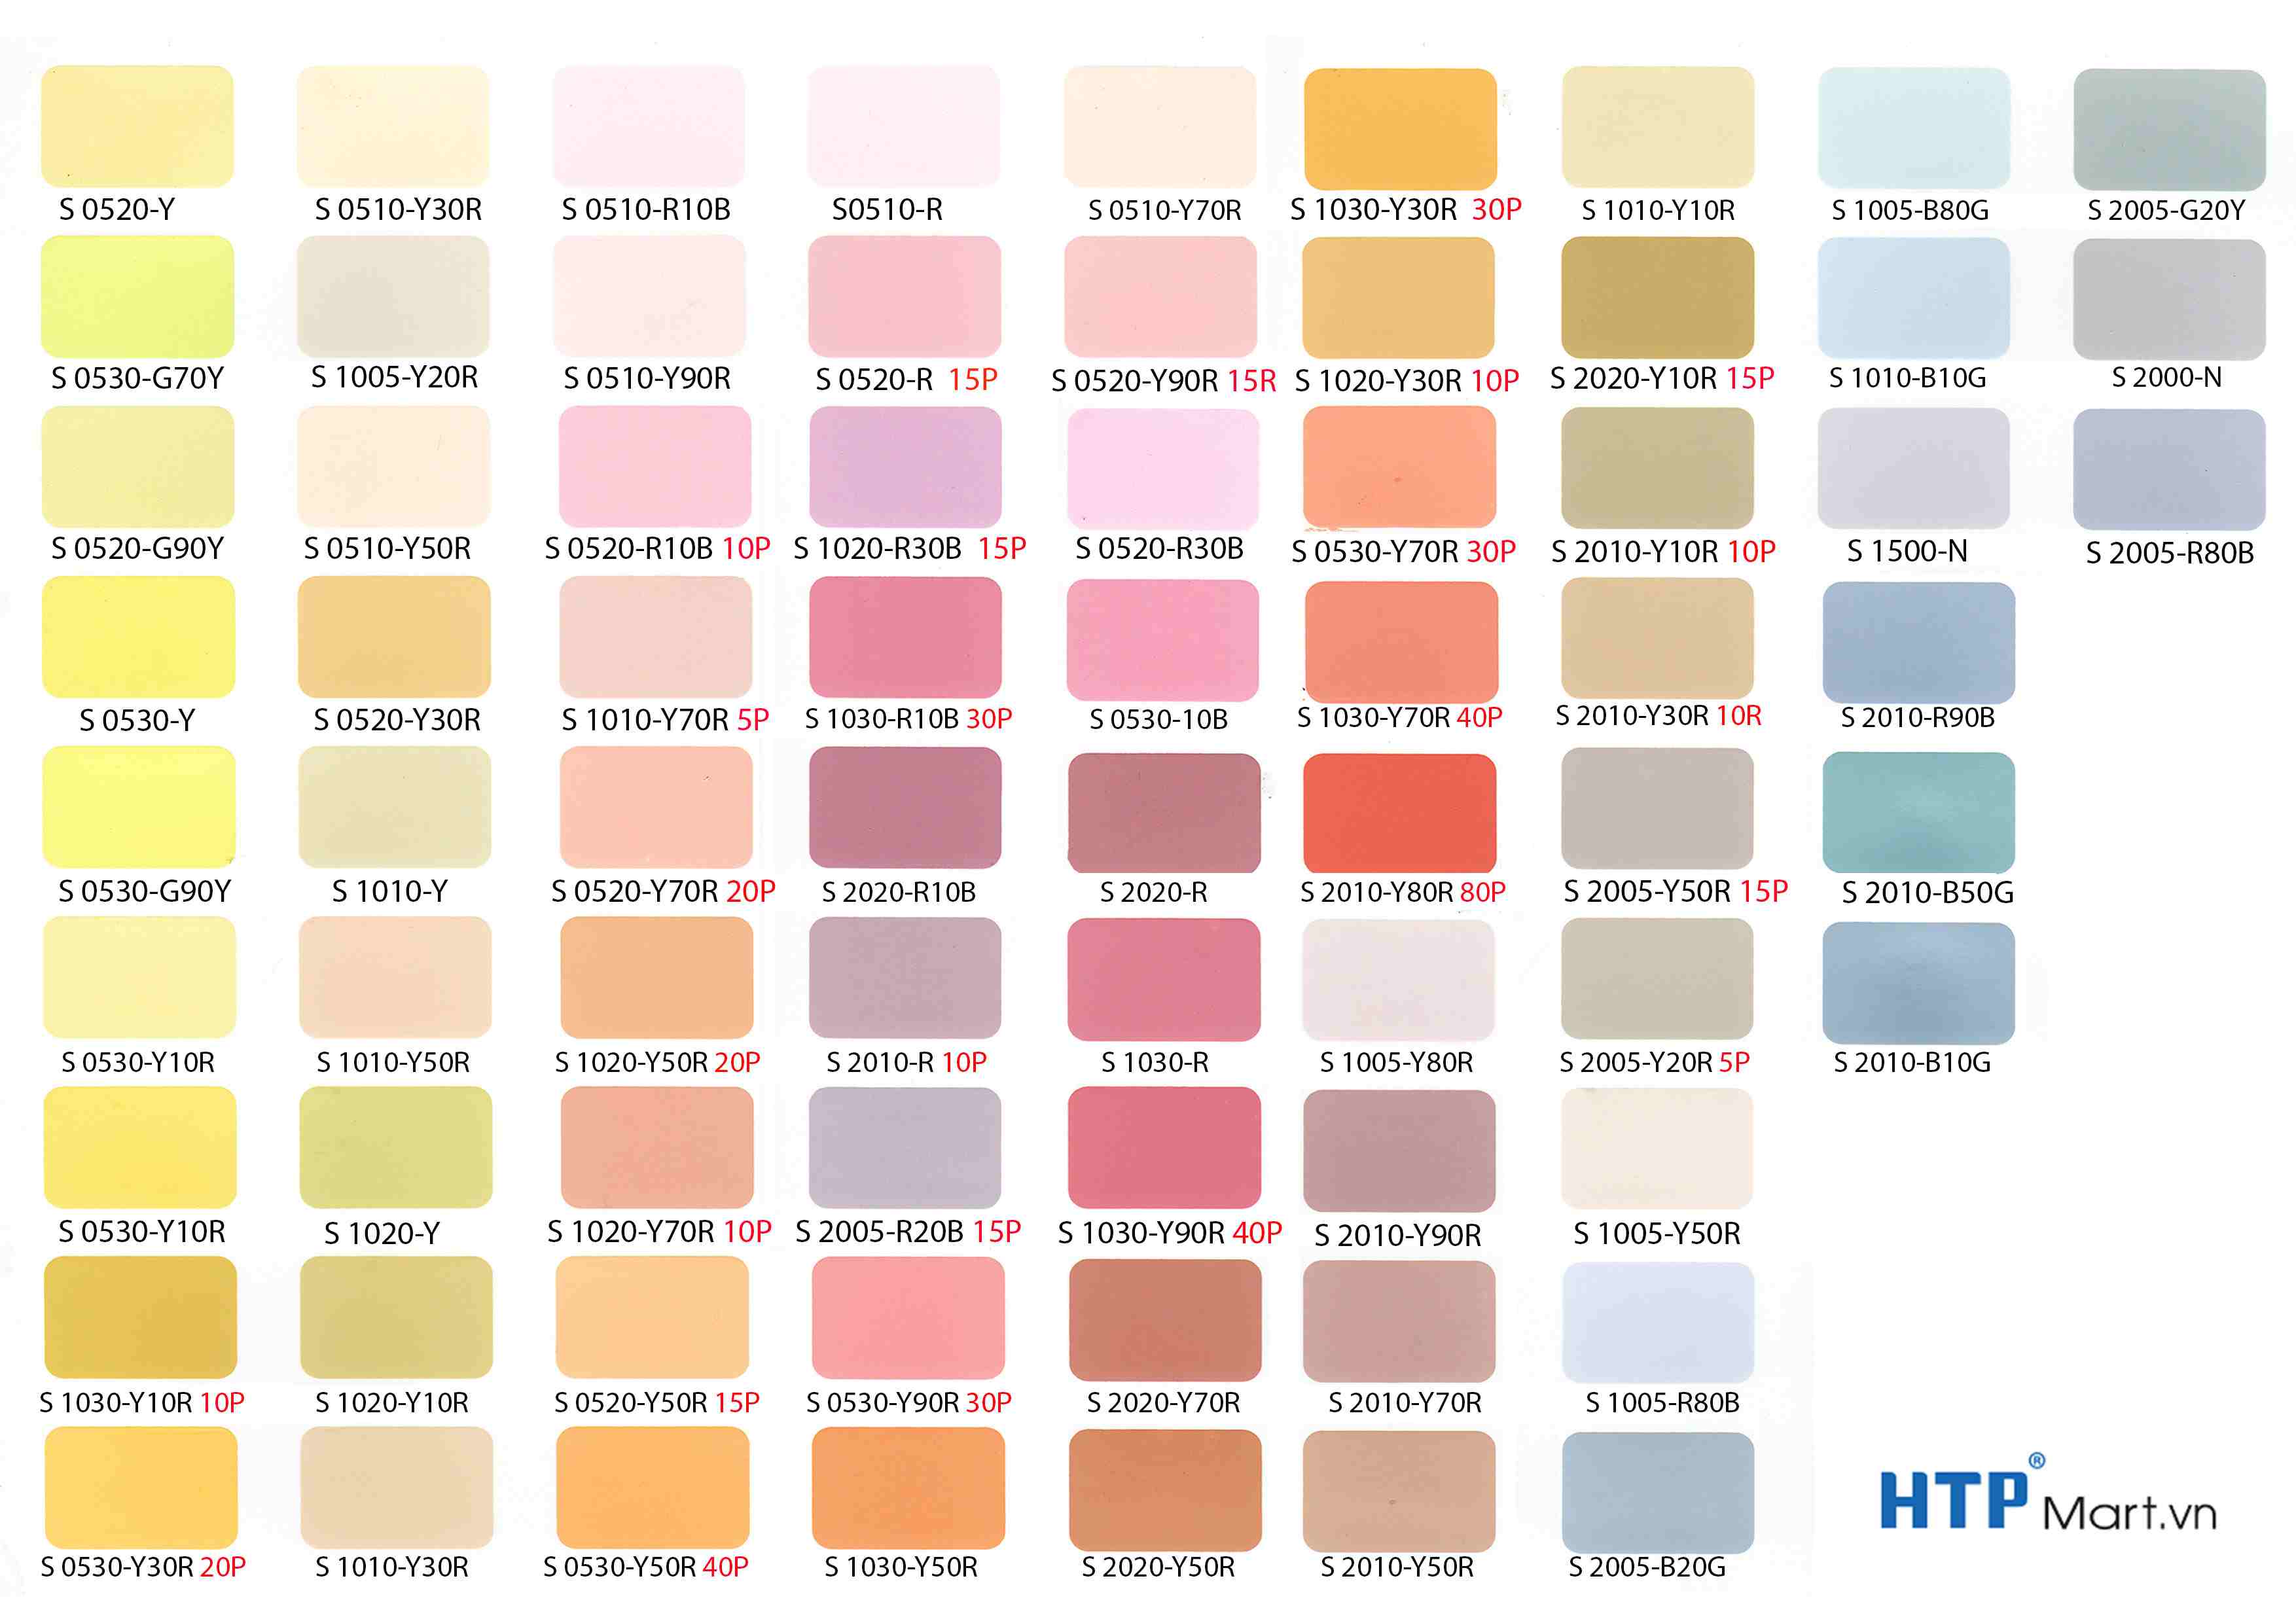 Bảng màu sơn nội thất Jotun Jotaplast 2 bao gồm đa dạng màu sắc, có độ bám dính vững chắc trên các bề mặt trần, tường, gỗ và kim loại. Mỗi màu sơn đều giúp tạo nên không gian sống thoải mái và ấm cúng cho gia đình bạn.